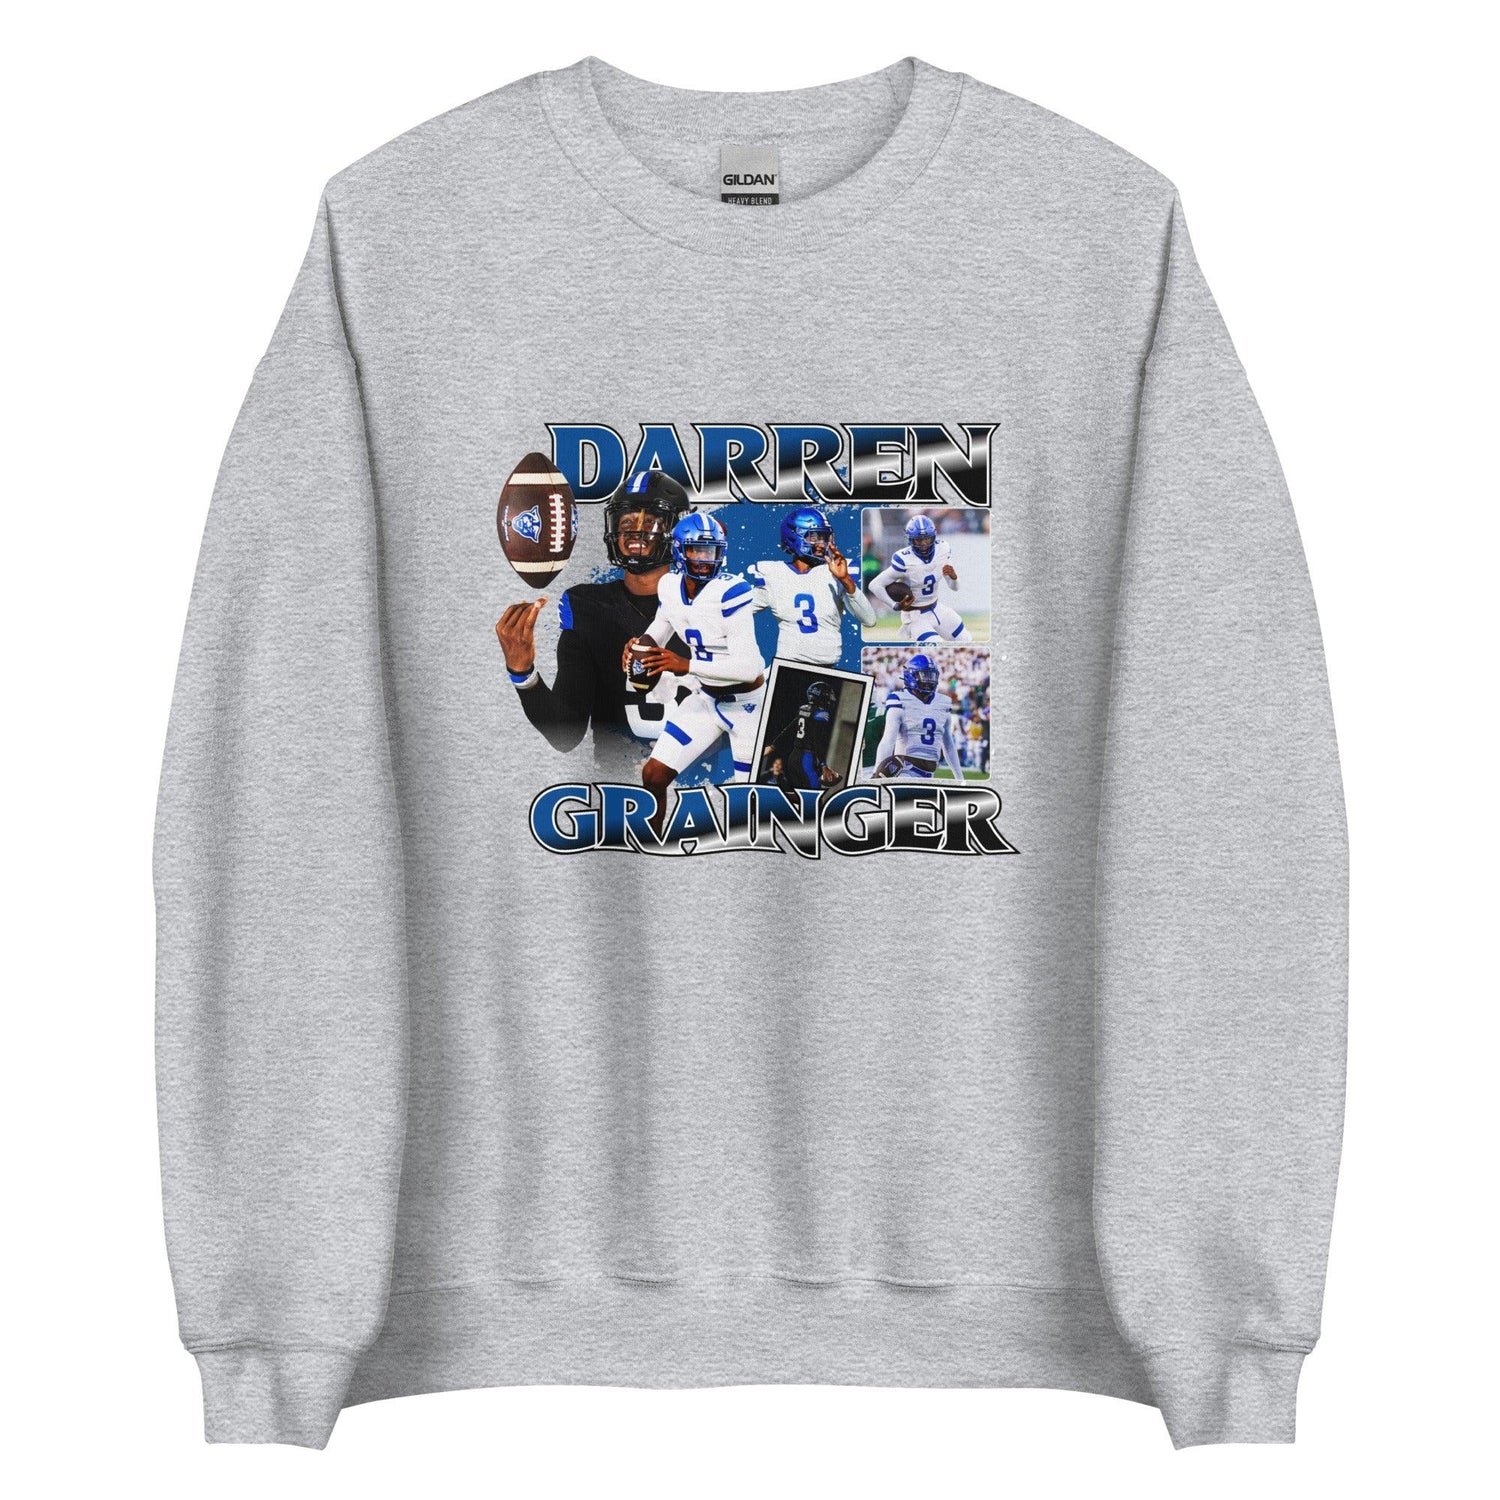 Darren Grainger "Vintage" Sweatshirt - Fan Arch